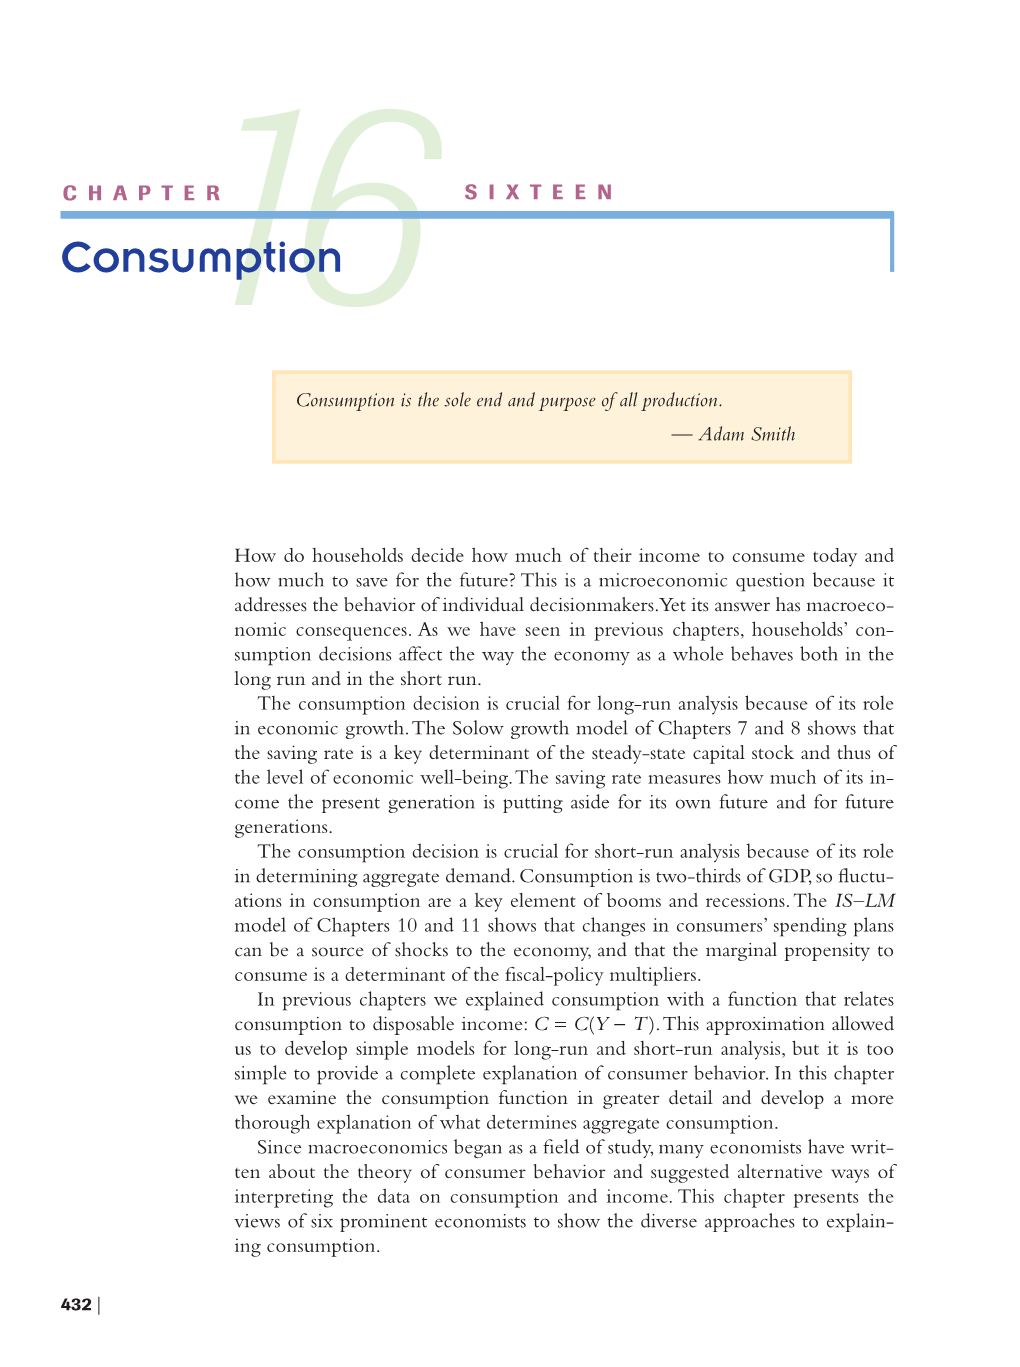 16-1 John Maynard Keynes and the Consumption Function